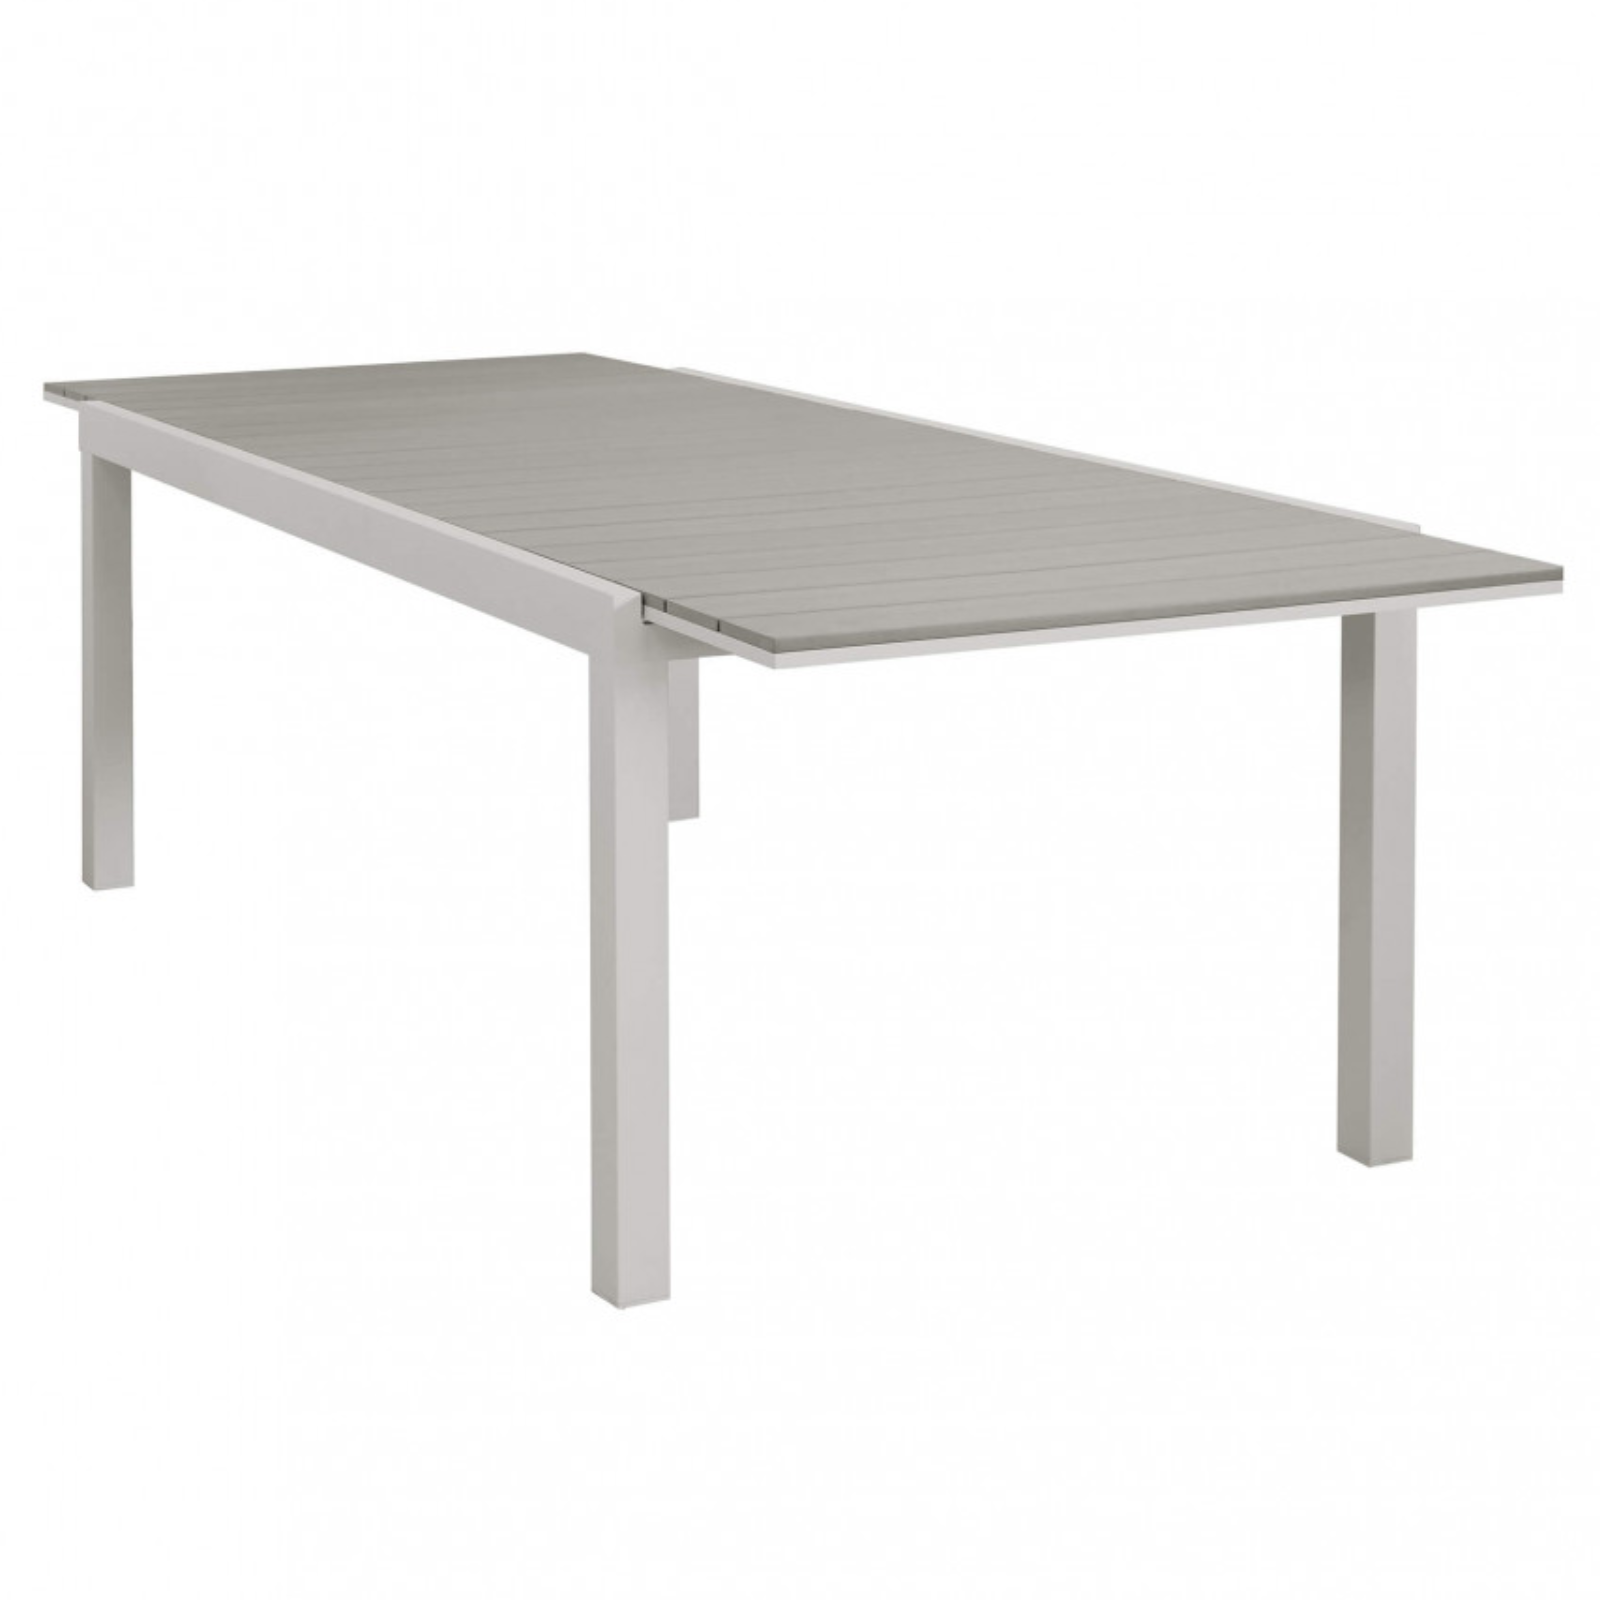 Tavolo allungabile rettangolare da esterno tortora struttura in alluminio e piano in polywood - Penta